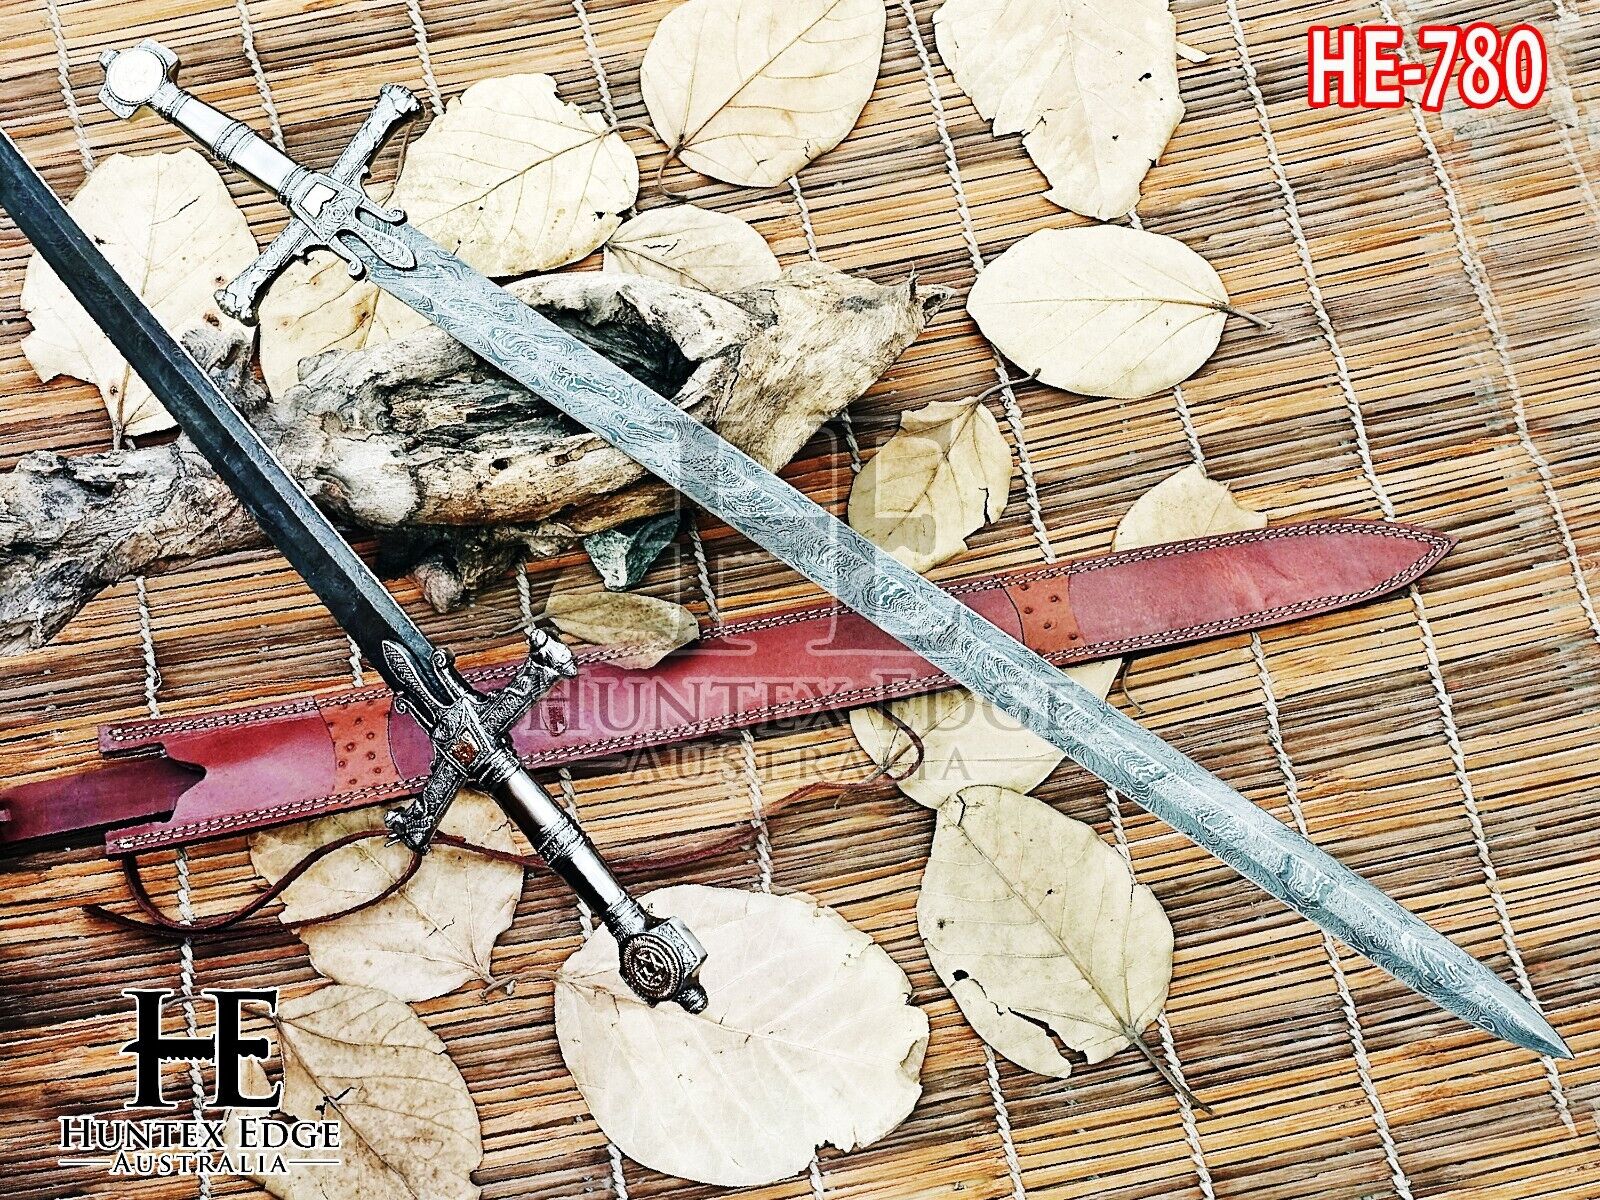 Huntex Handmade Long Knight Templar / Star Of David Sword / Damascus Blade Sword